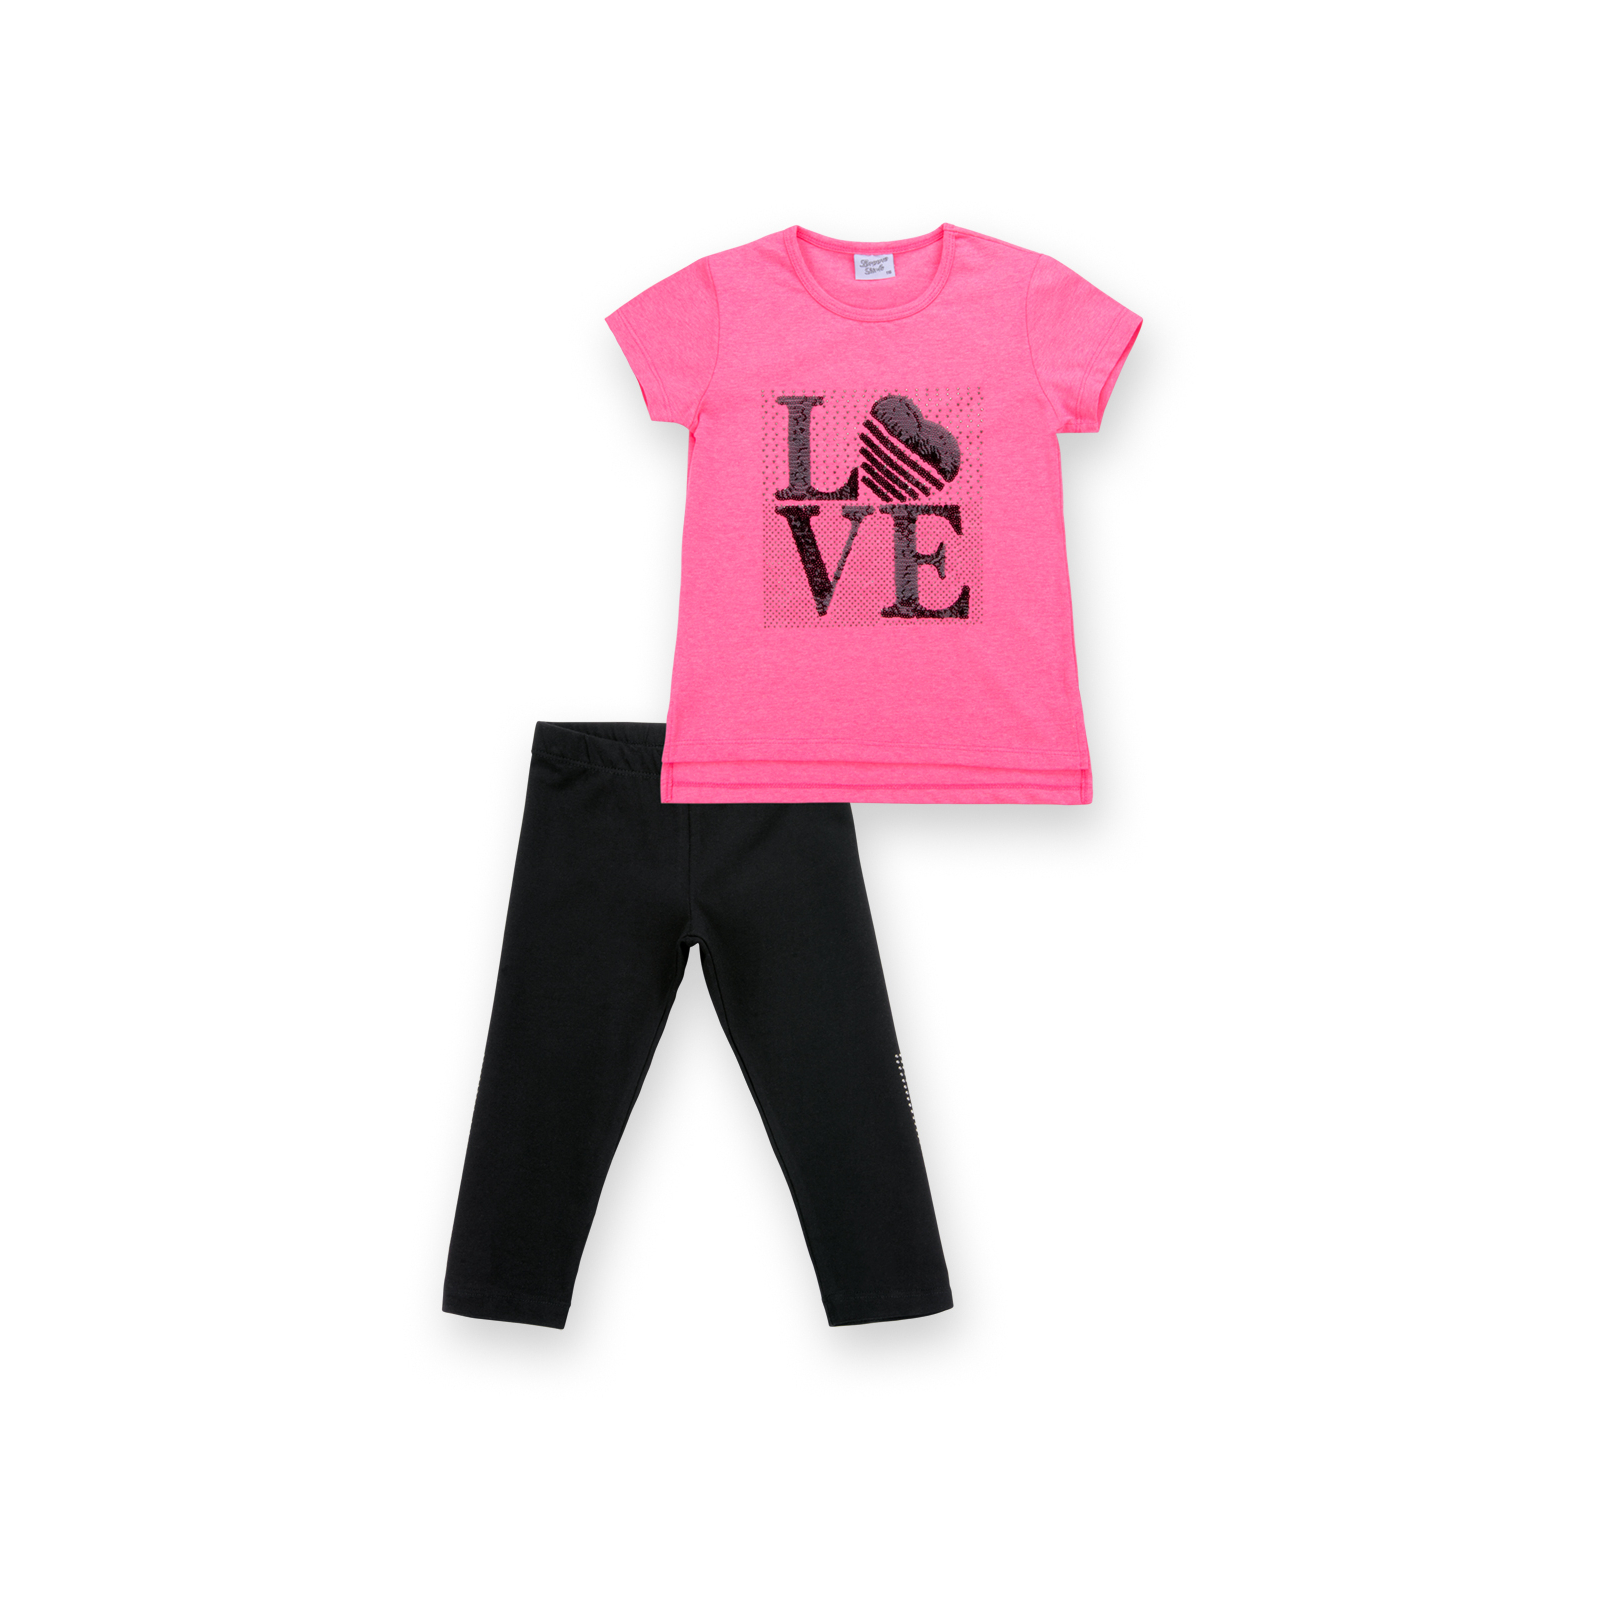 Набор детской одежды Breeze с надписью "LOVE" из пайеток (8307-128G-pink)